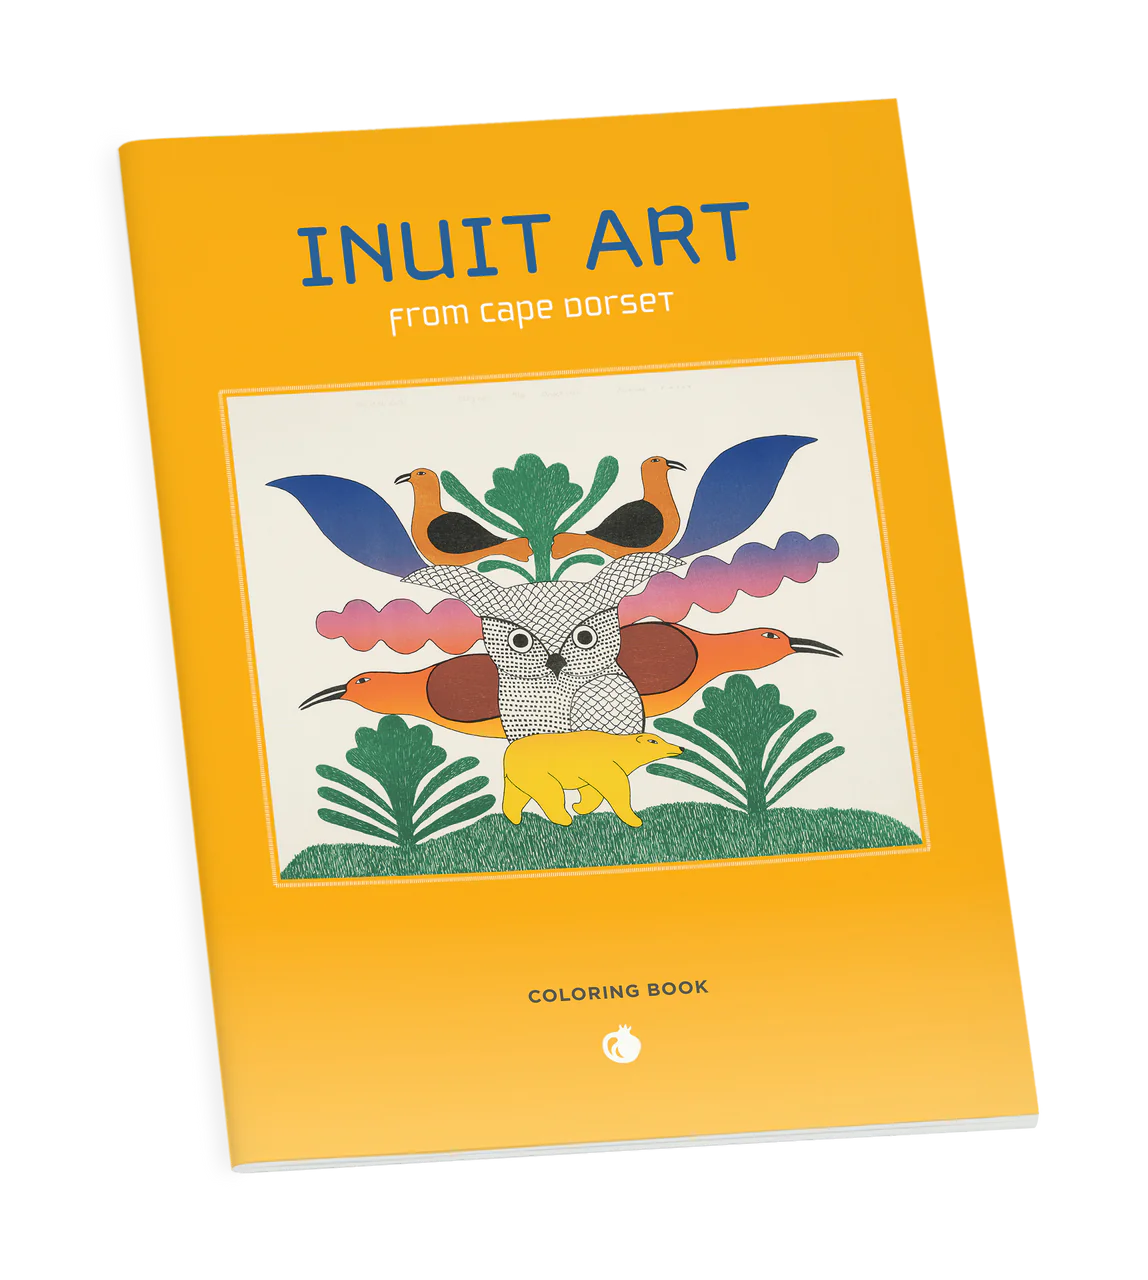 Livre de coloriage d'art inuit